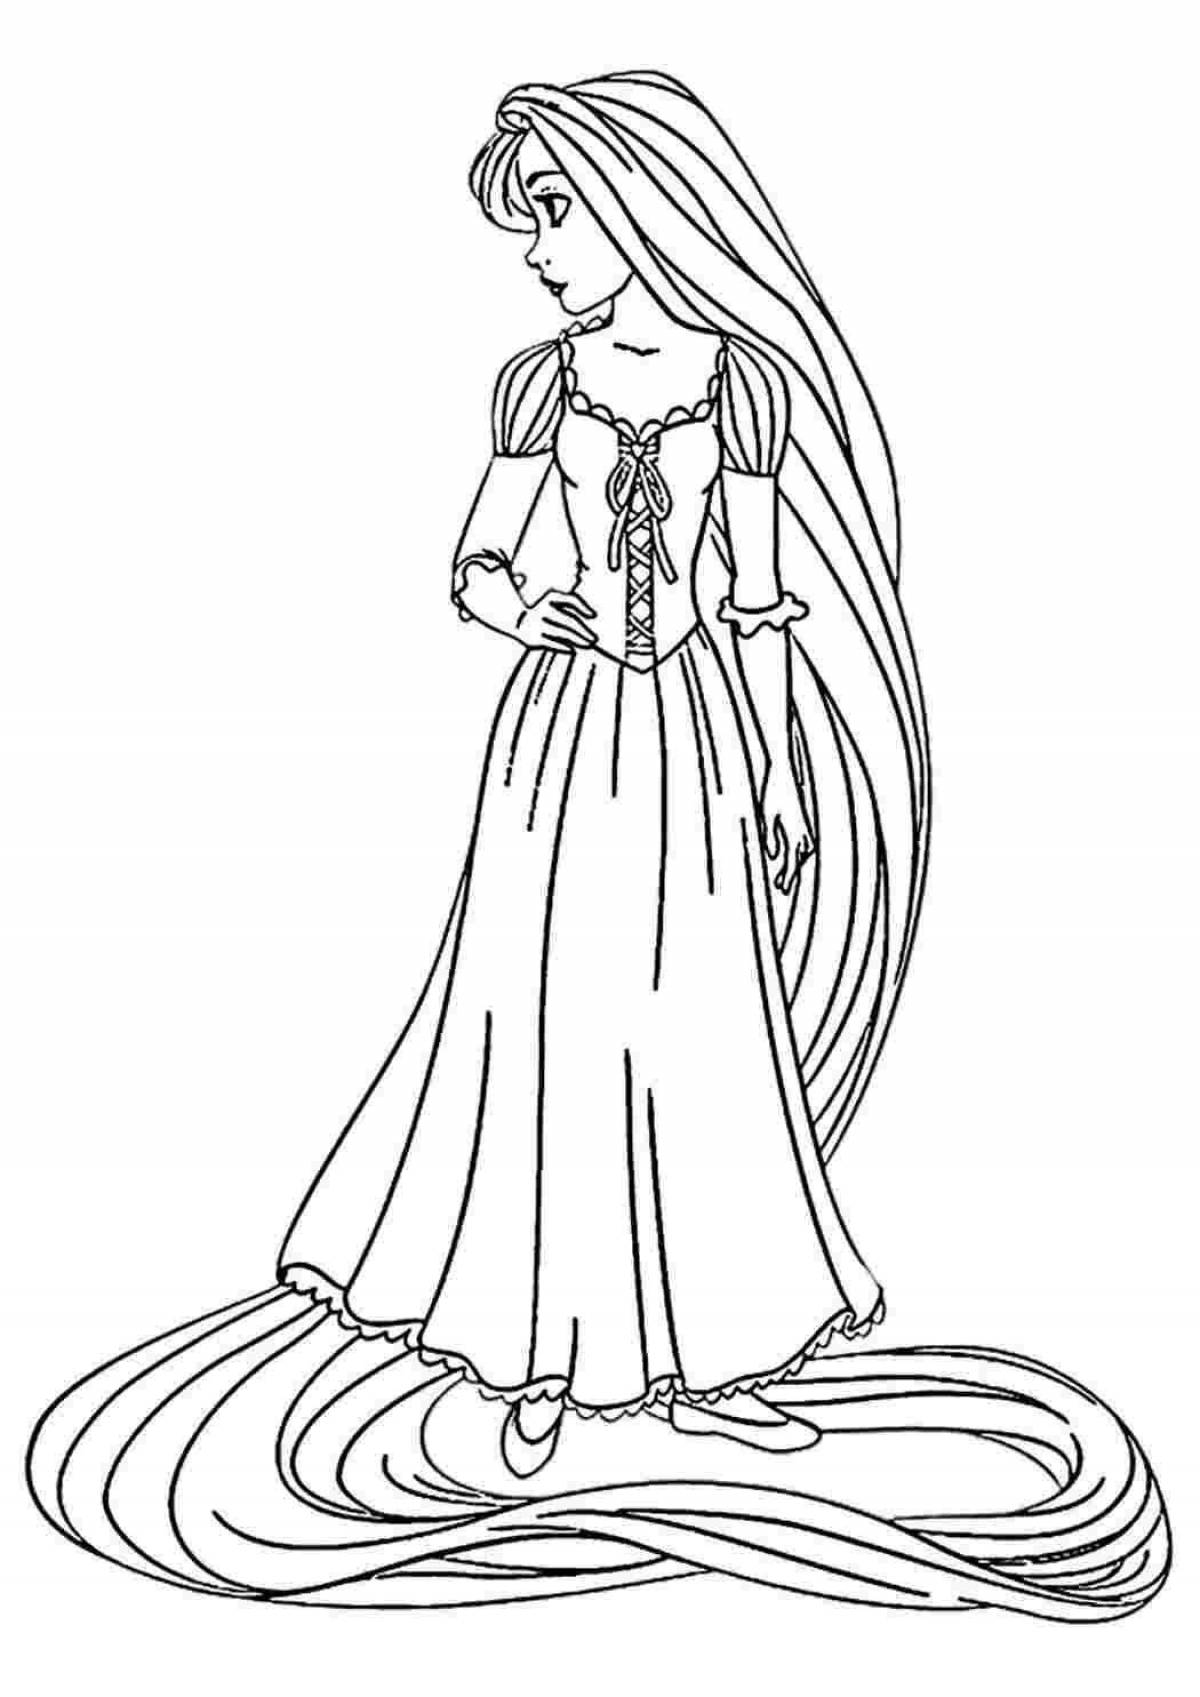 Adorable long hair princess coloring page